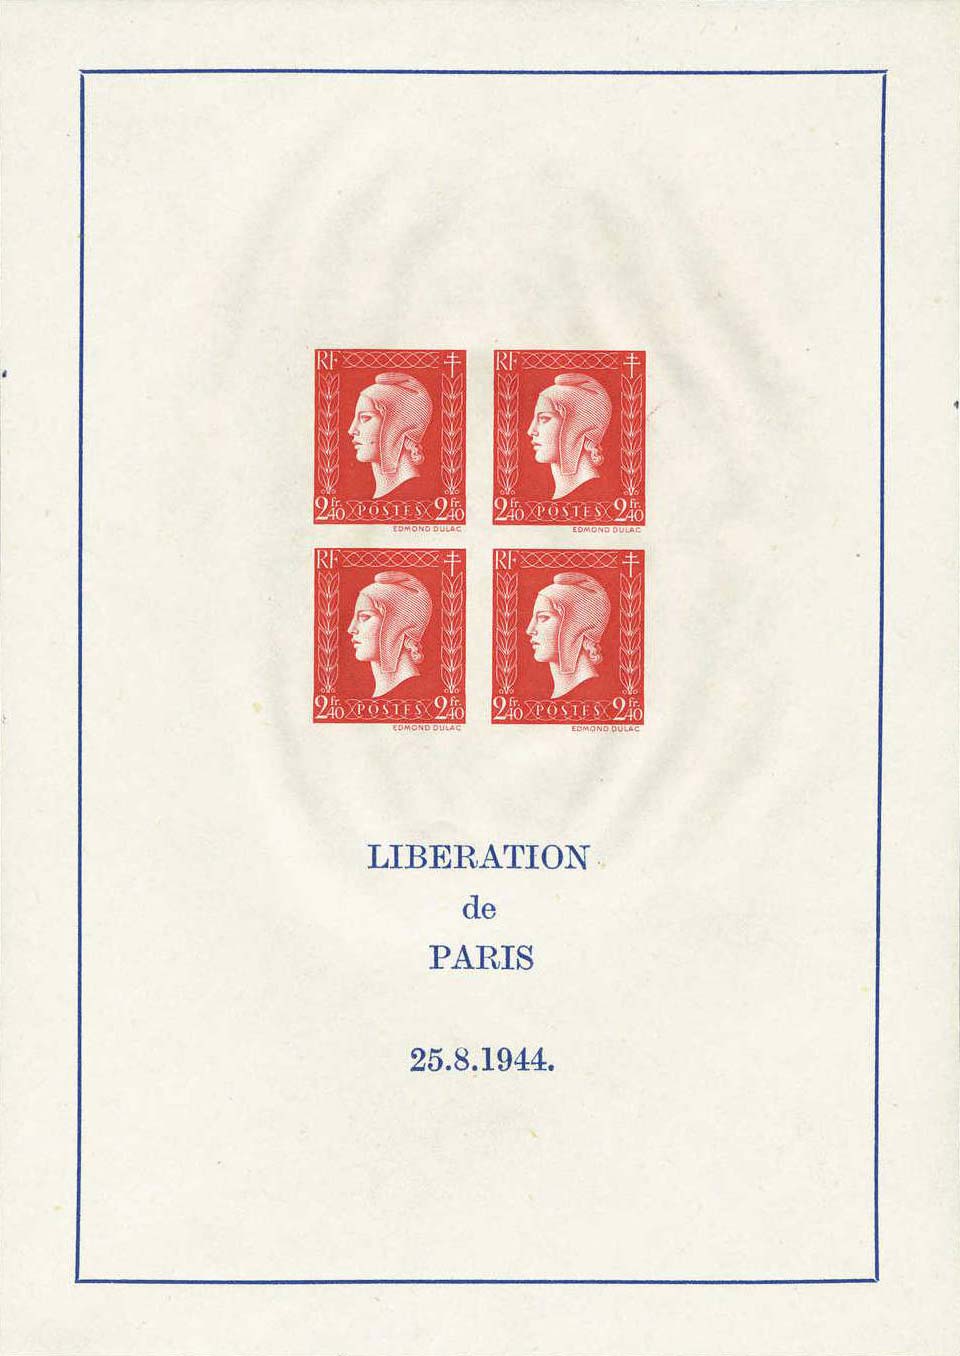 LIBÉRATION de PARIS 25.8.1944